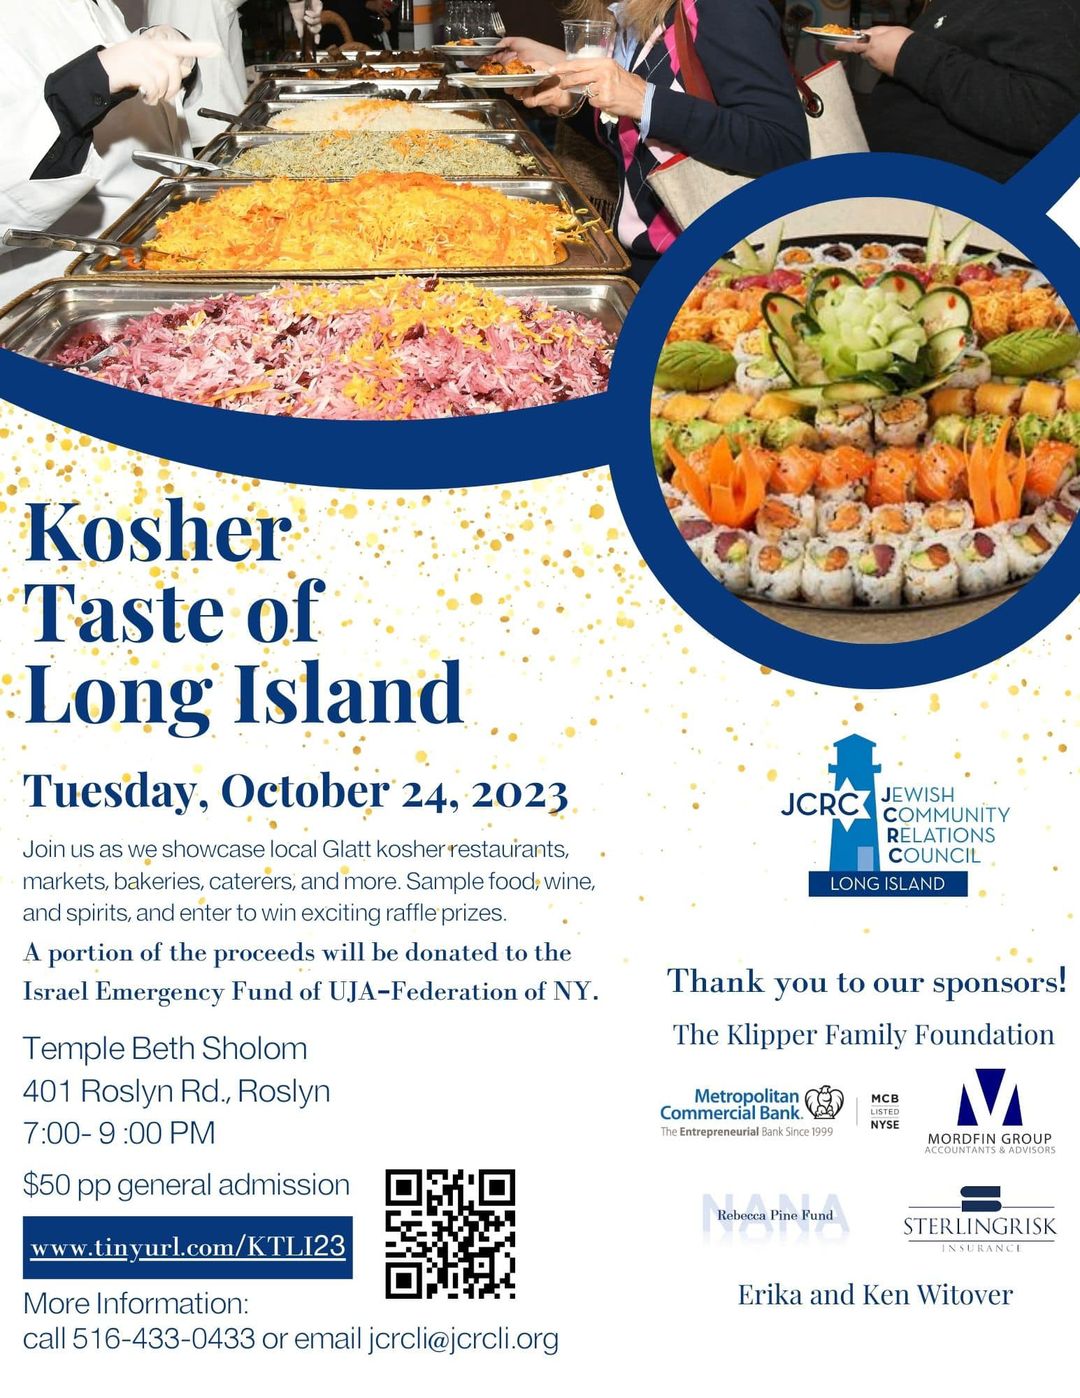 Kosher Taste of Long Island 2023